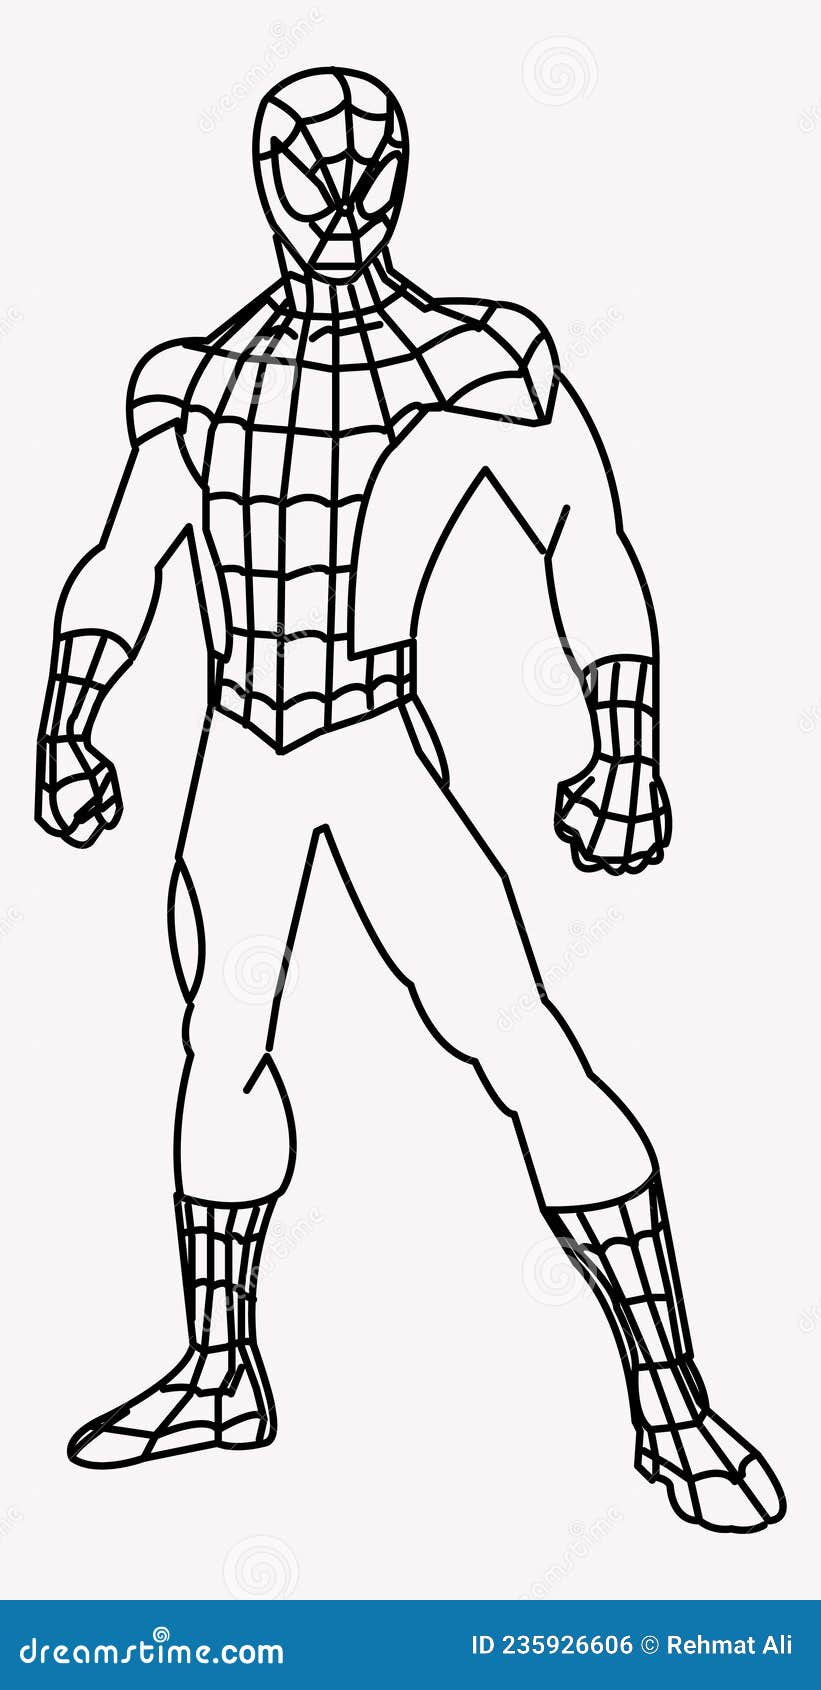 Hãy cùng chiêm ngưỡng mô hình nhân vật Spiderman vô cùng đáng yêu và tuyệt đẹp! Với chất liệu cao cấp và độ chi tiết tinh xảo, bạn sẽ tựa như đang ngắm nhìn người hùng tốt bụng của New York ngay trên tay mình đấy!